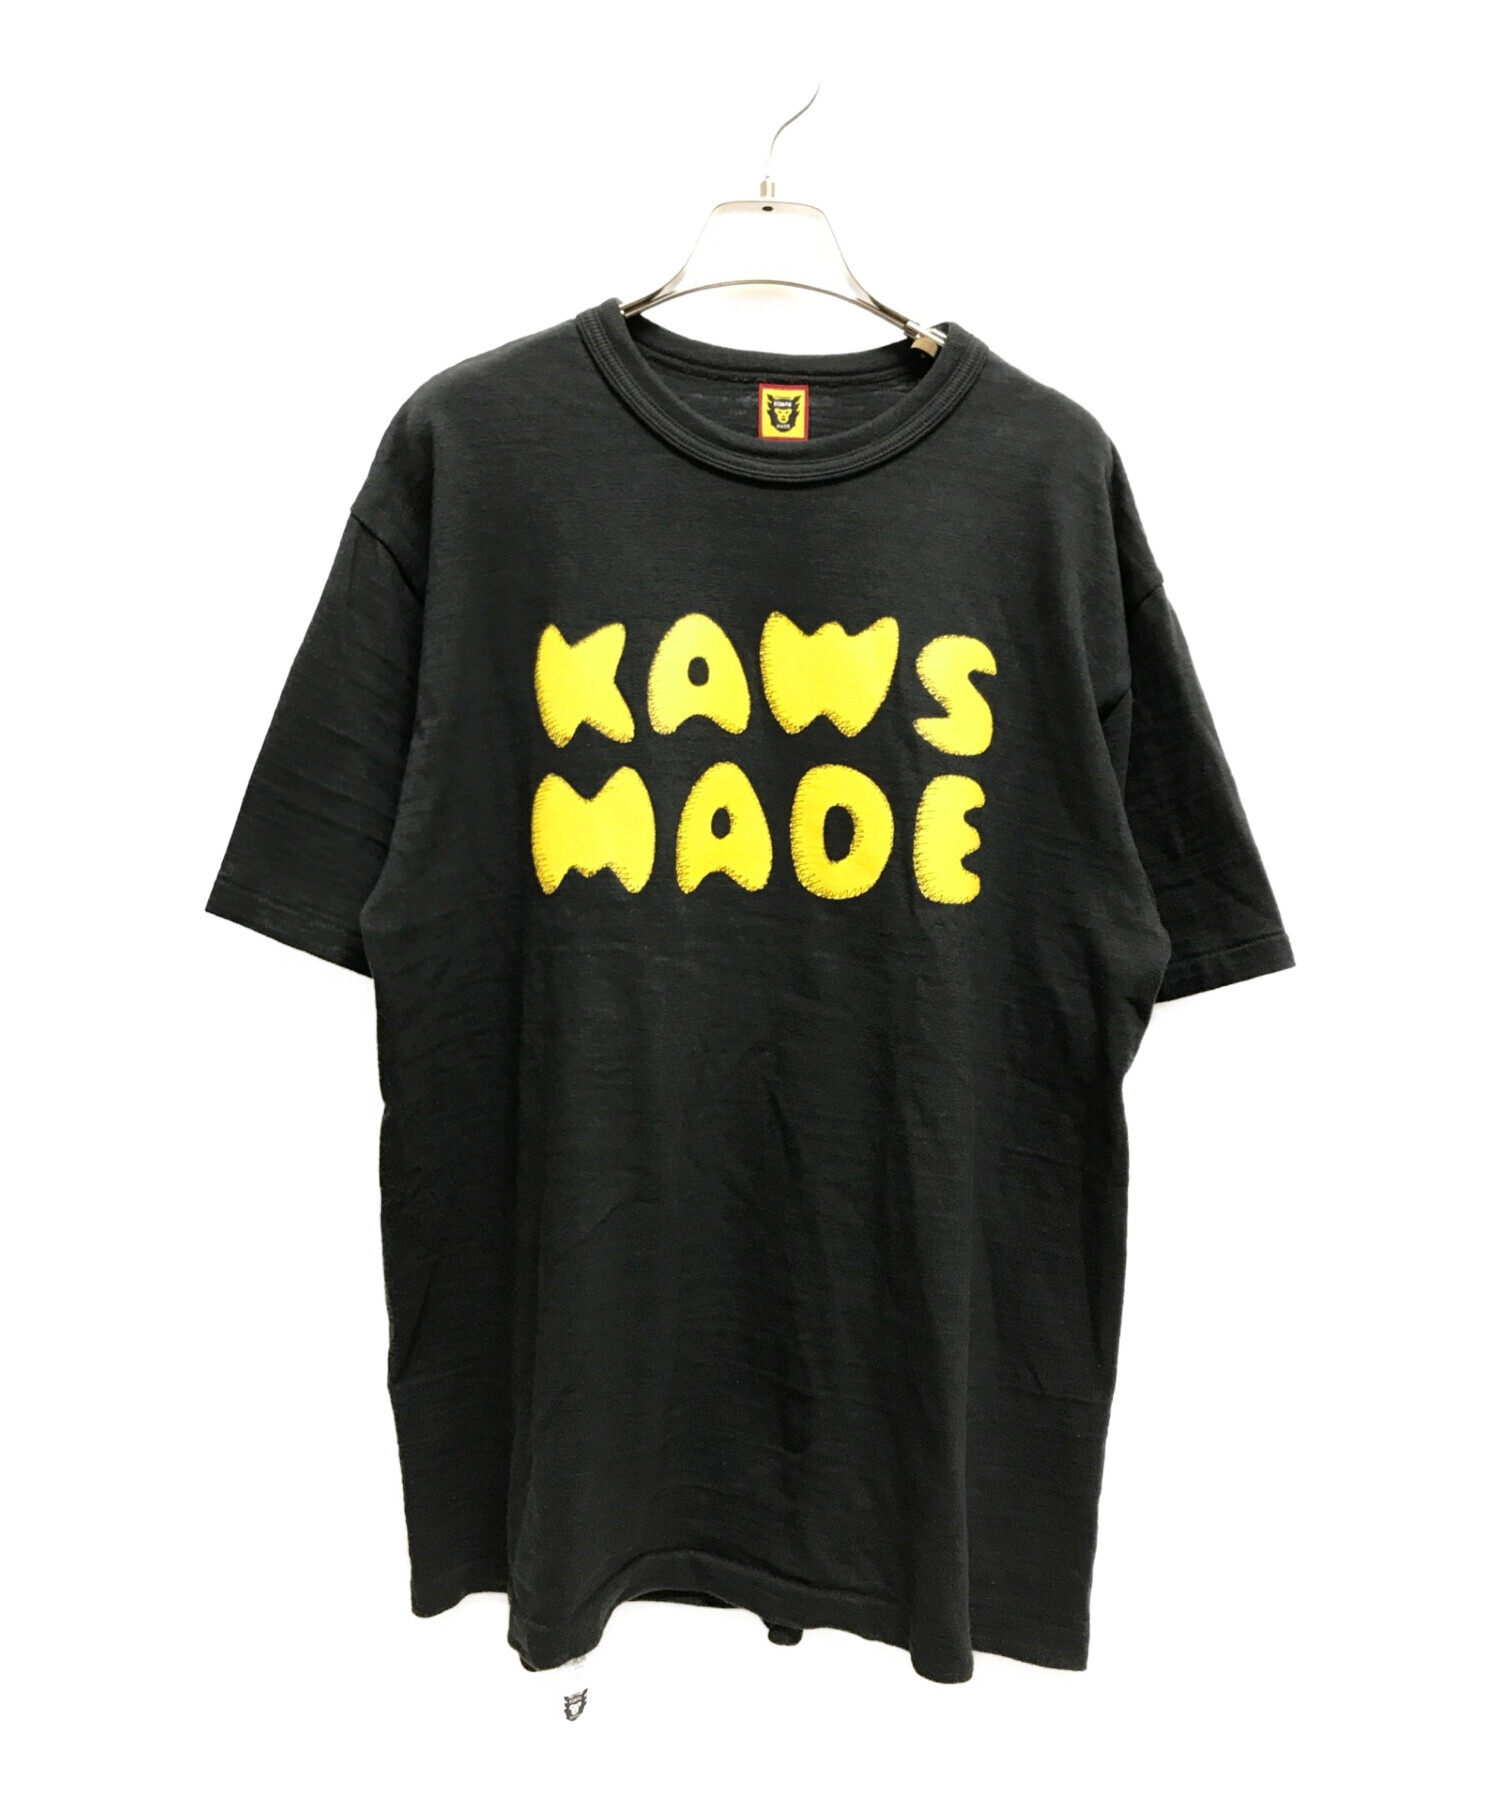 humanmade × kaws コラボ Tシャツ ブラック Lサイズ-